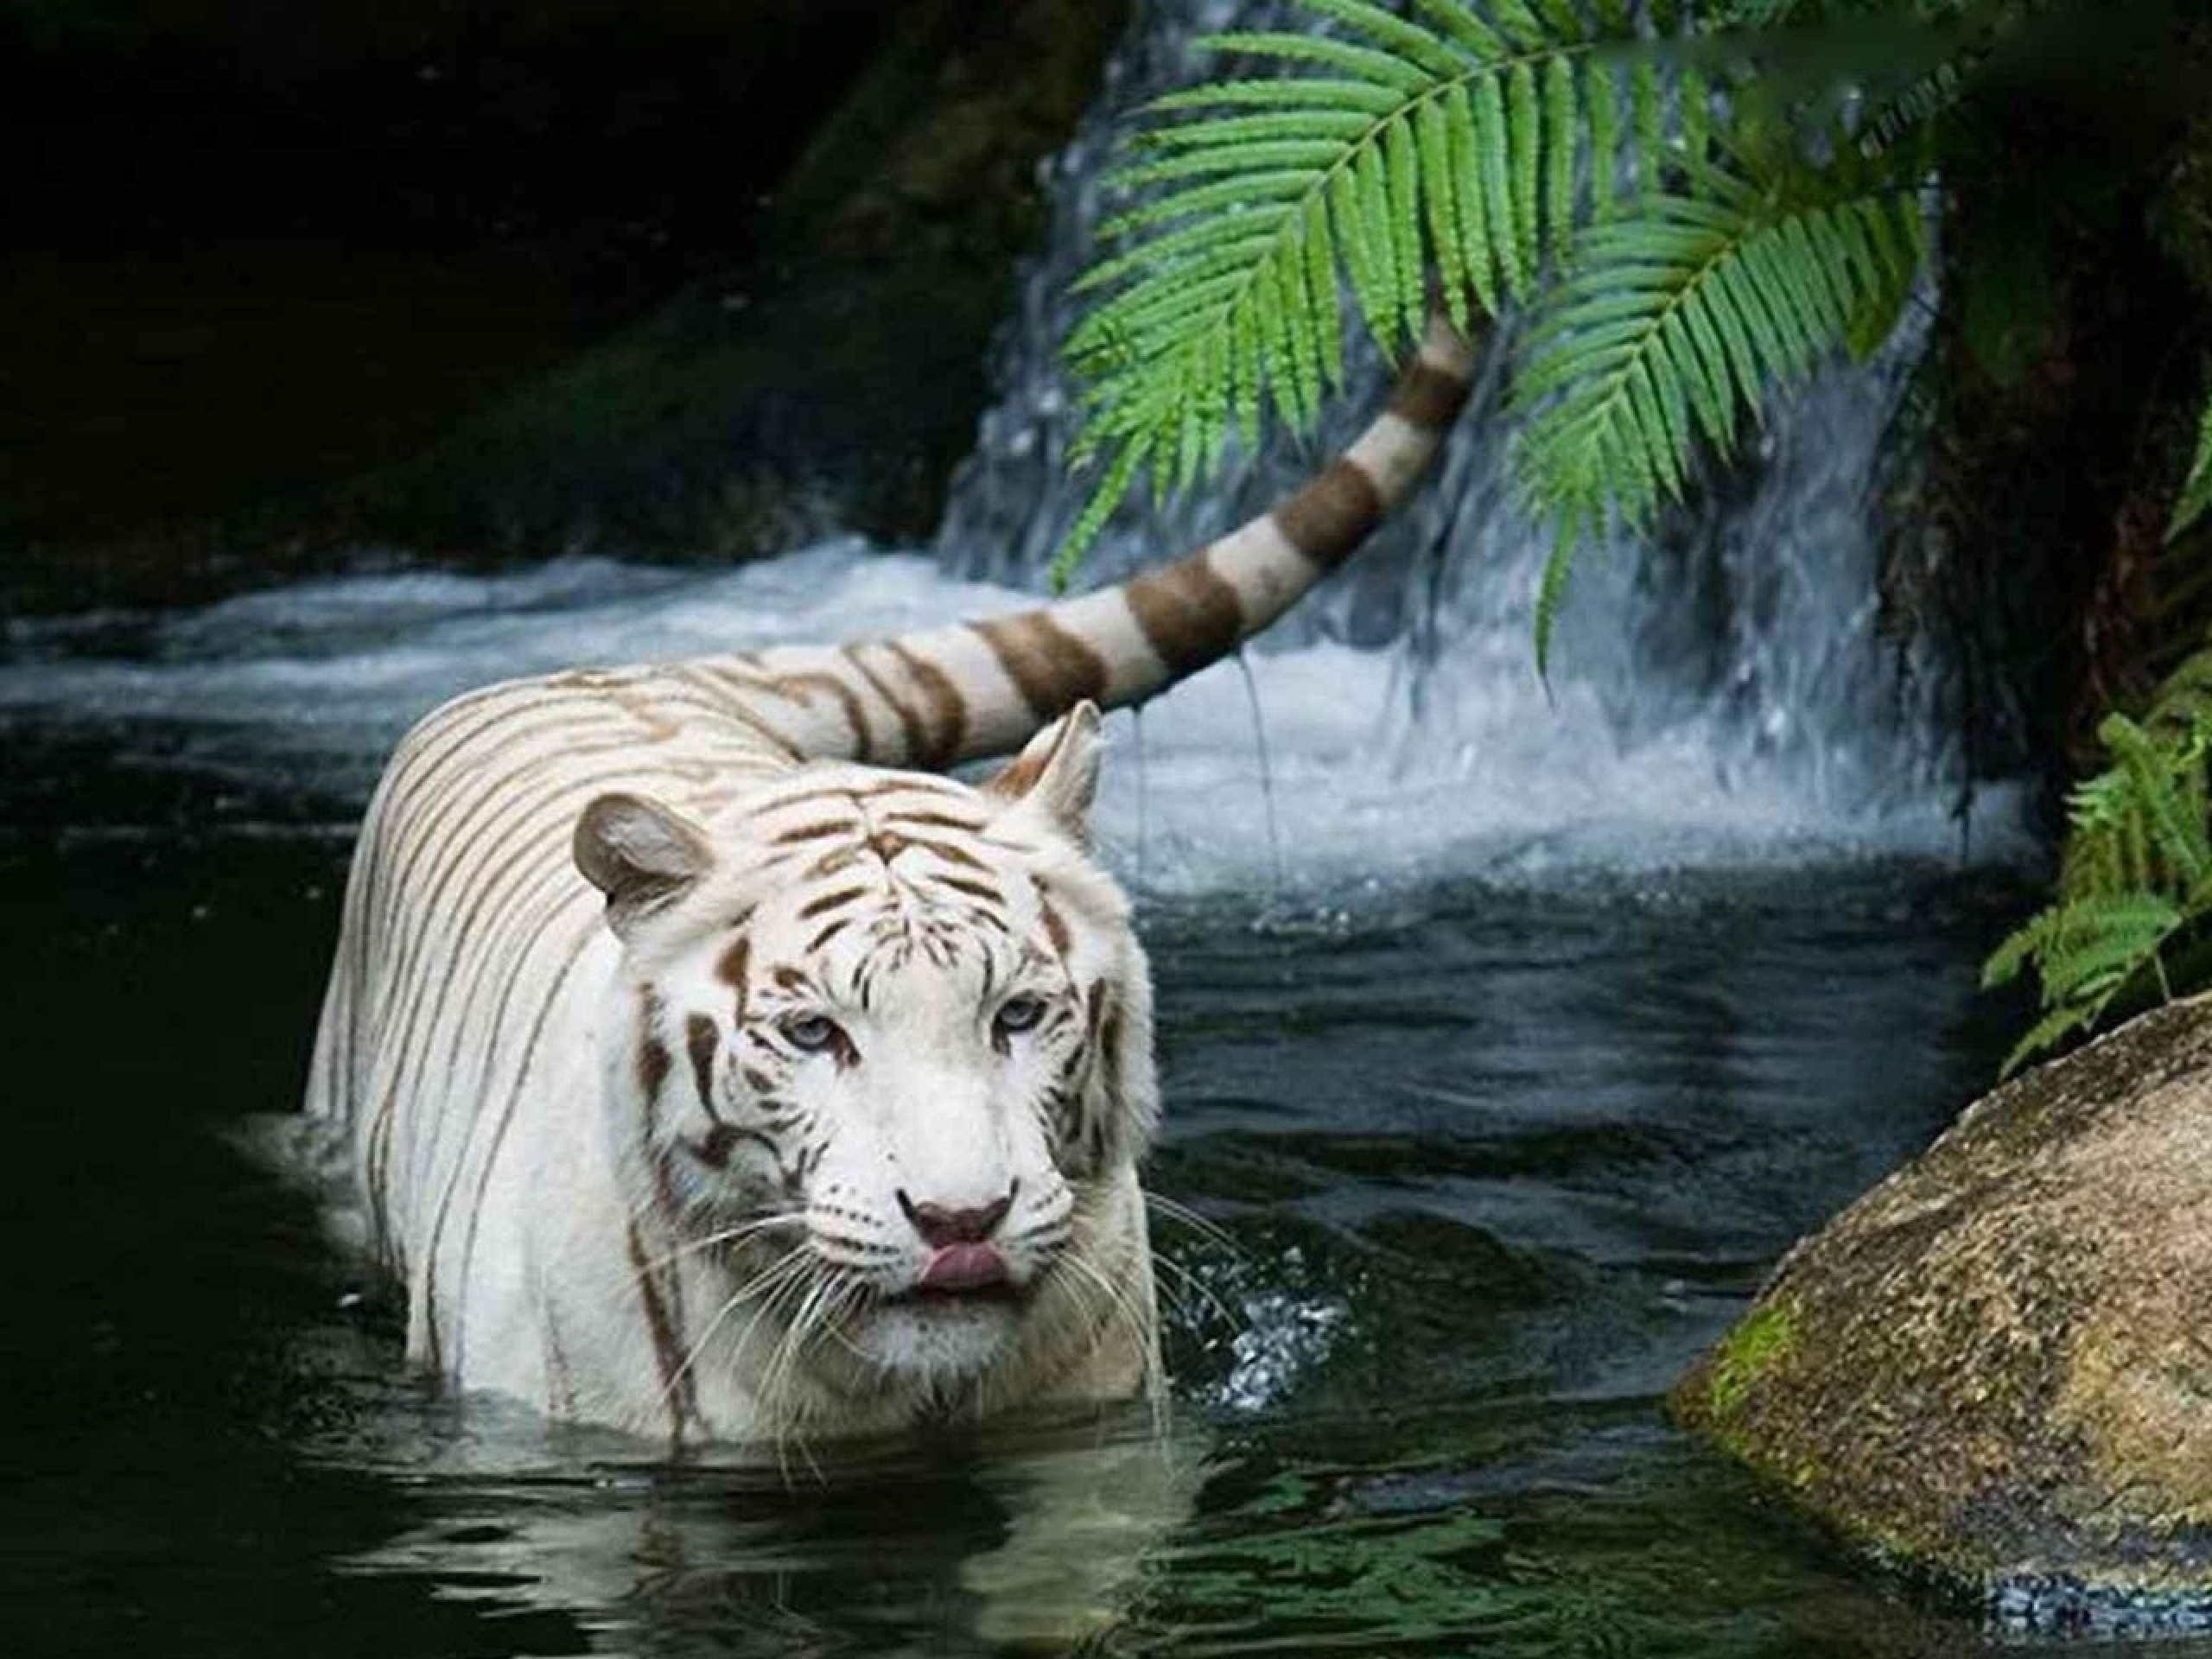 white, Tiger Wallpaper